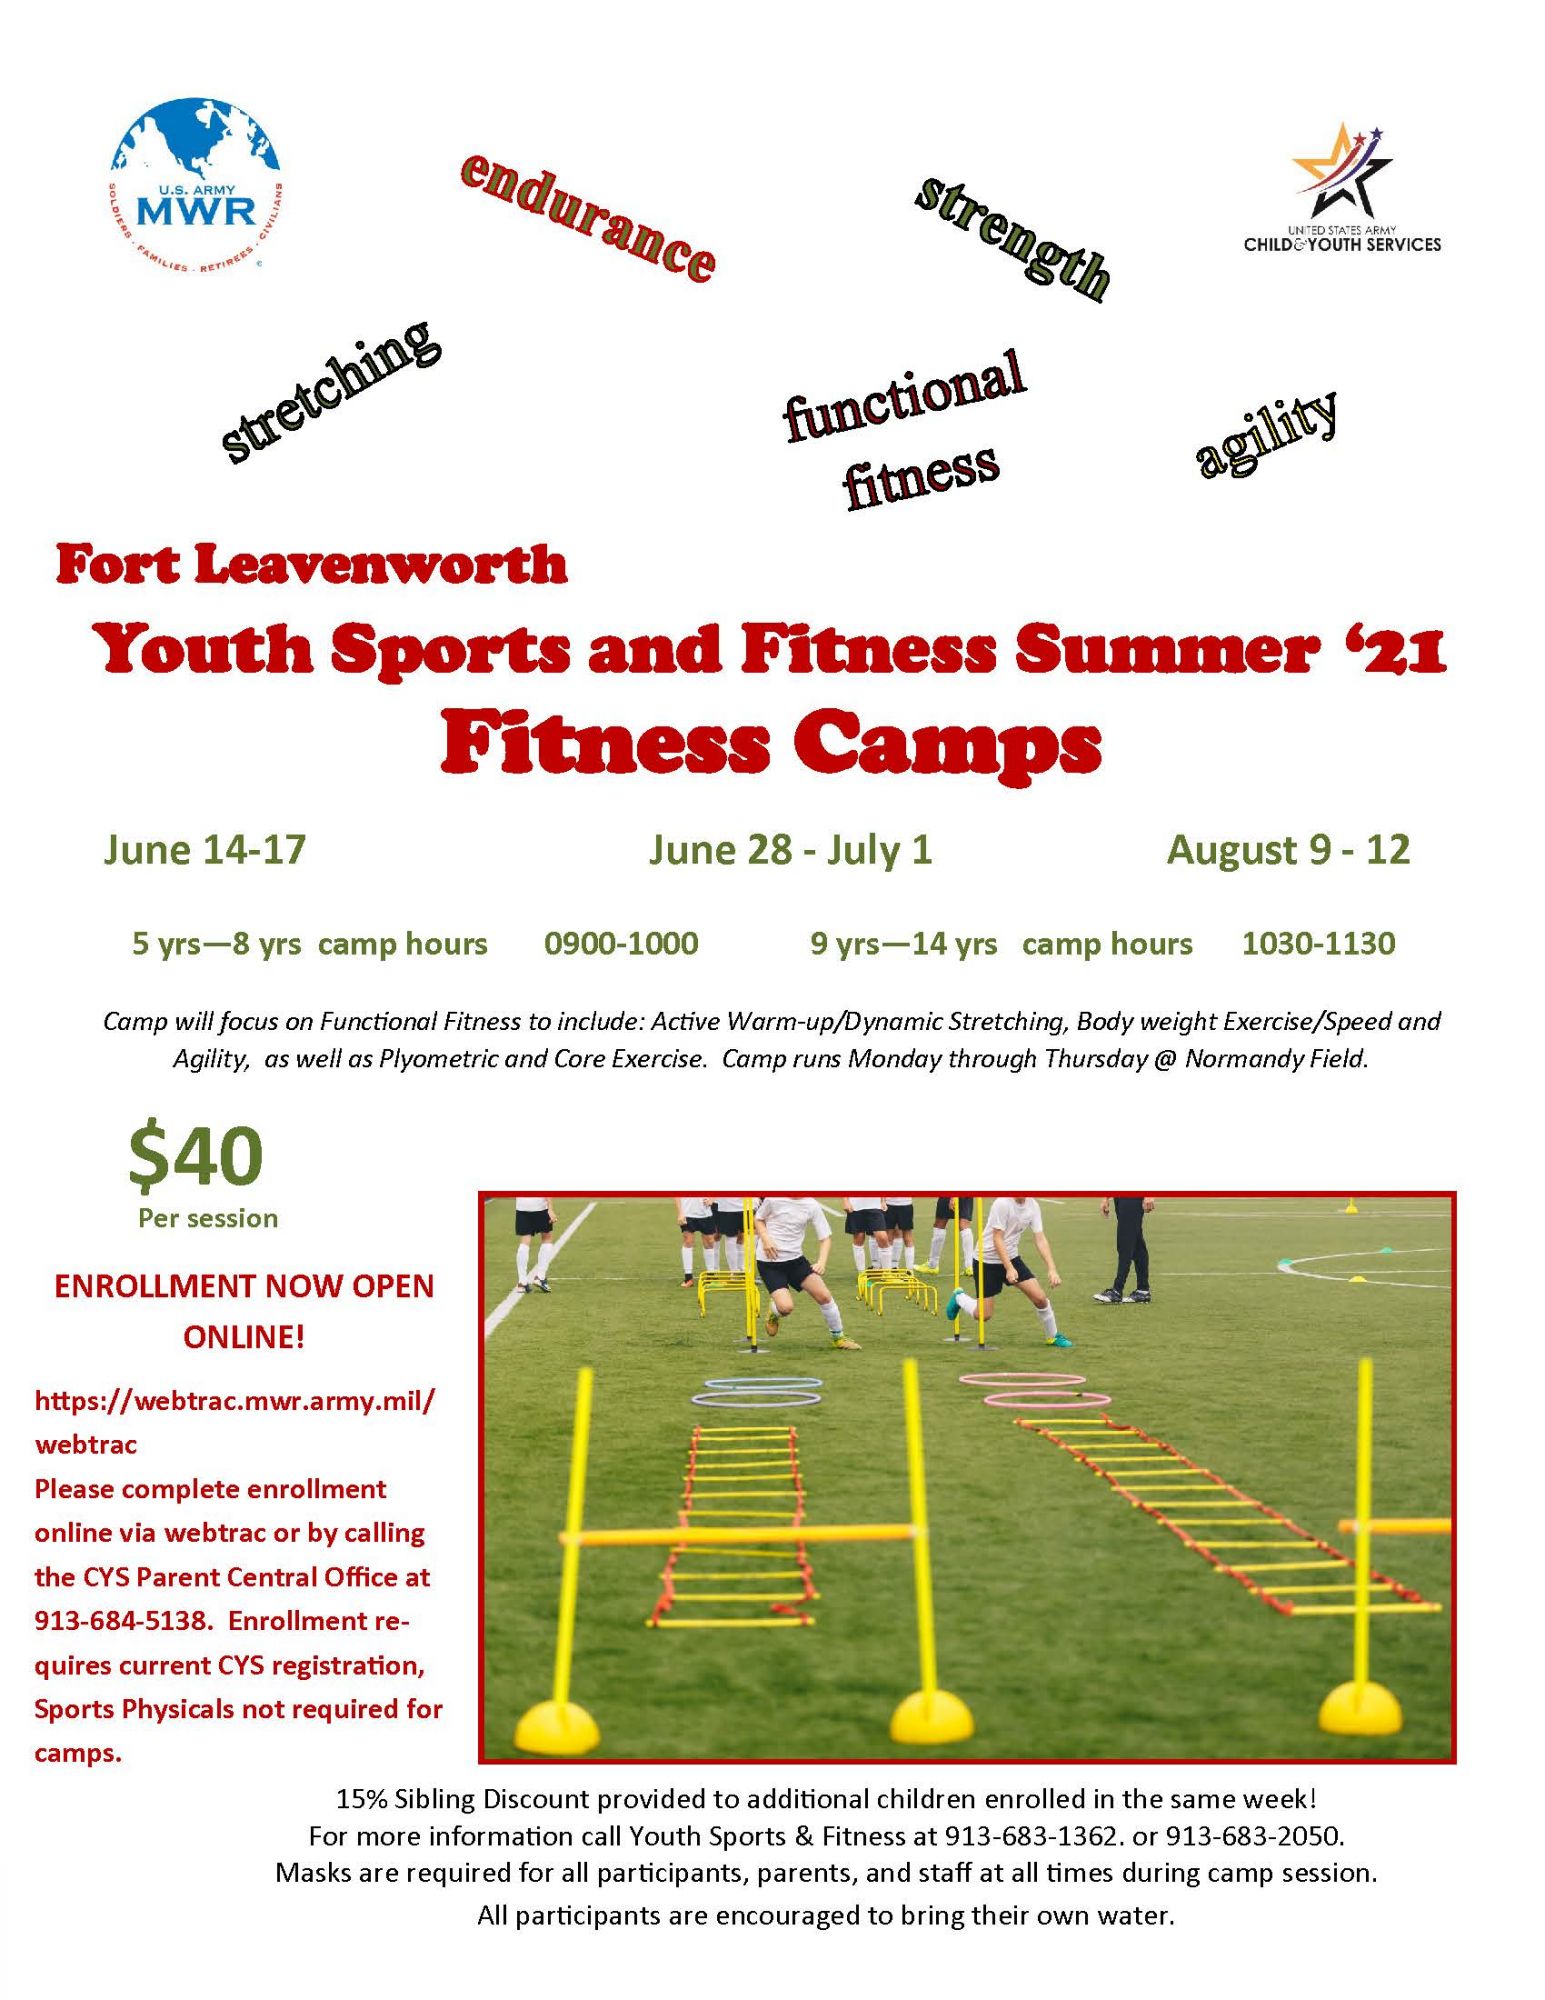 YS Summer Fitness camp flyer 2021.jpg